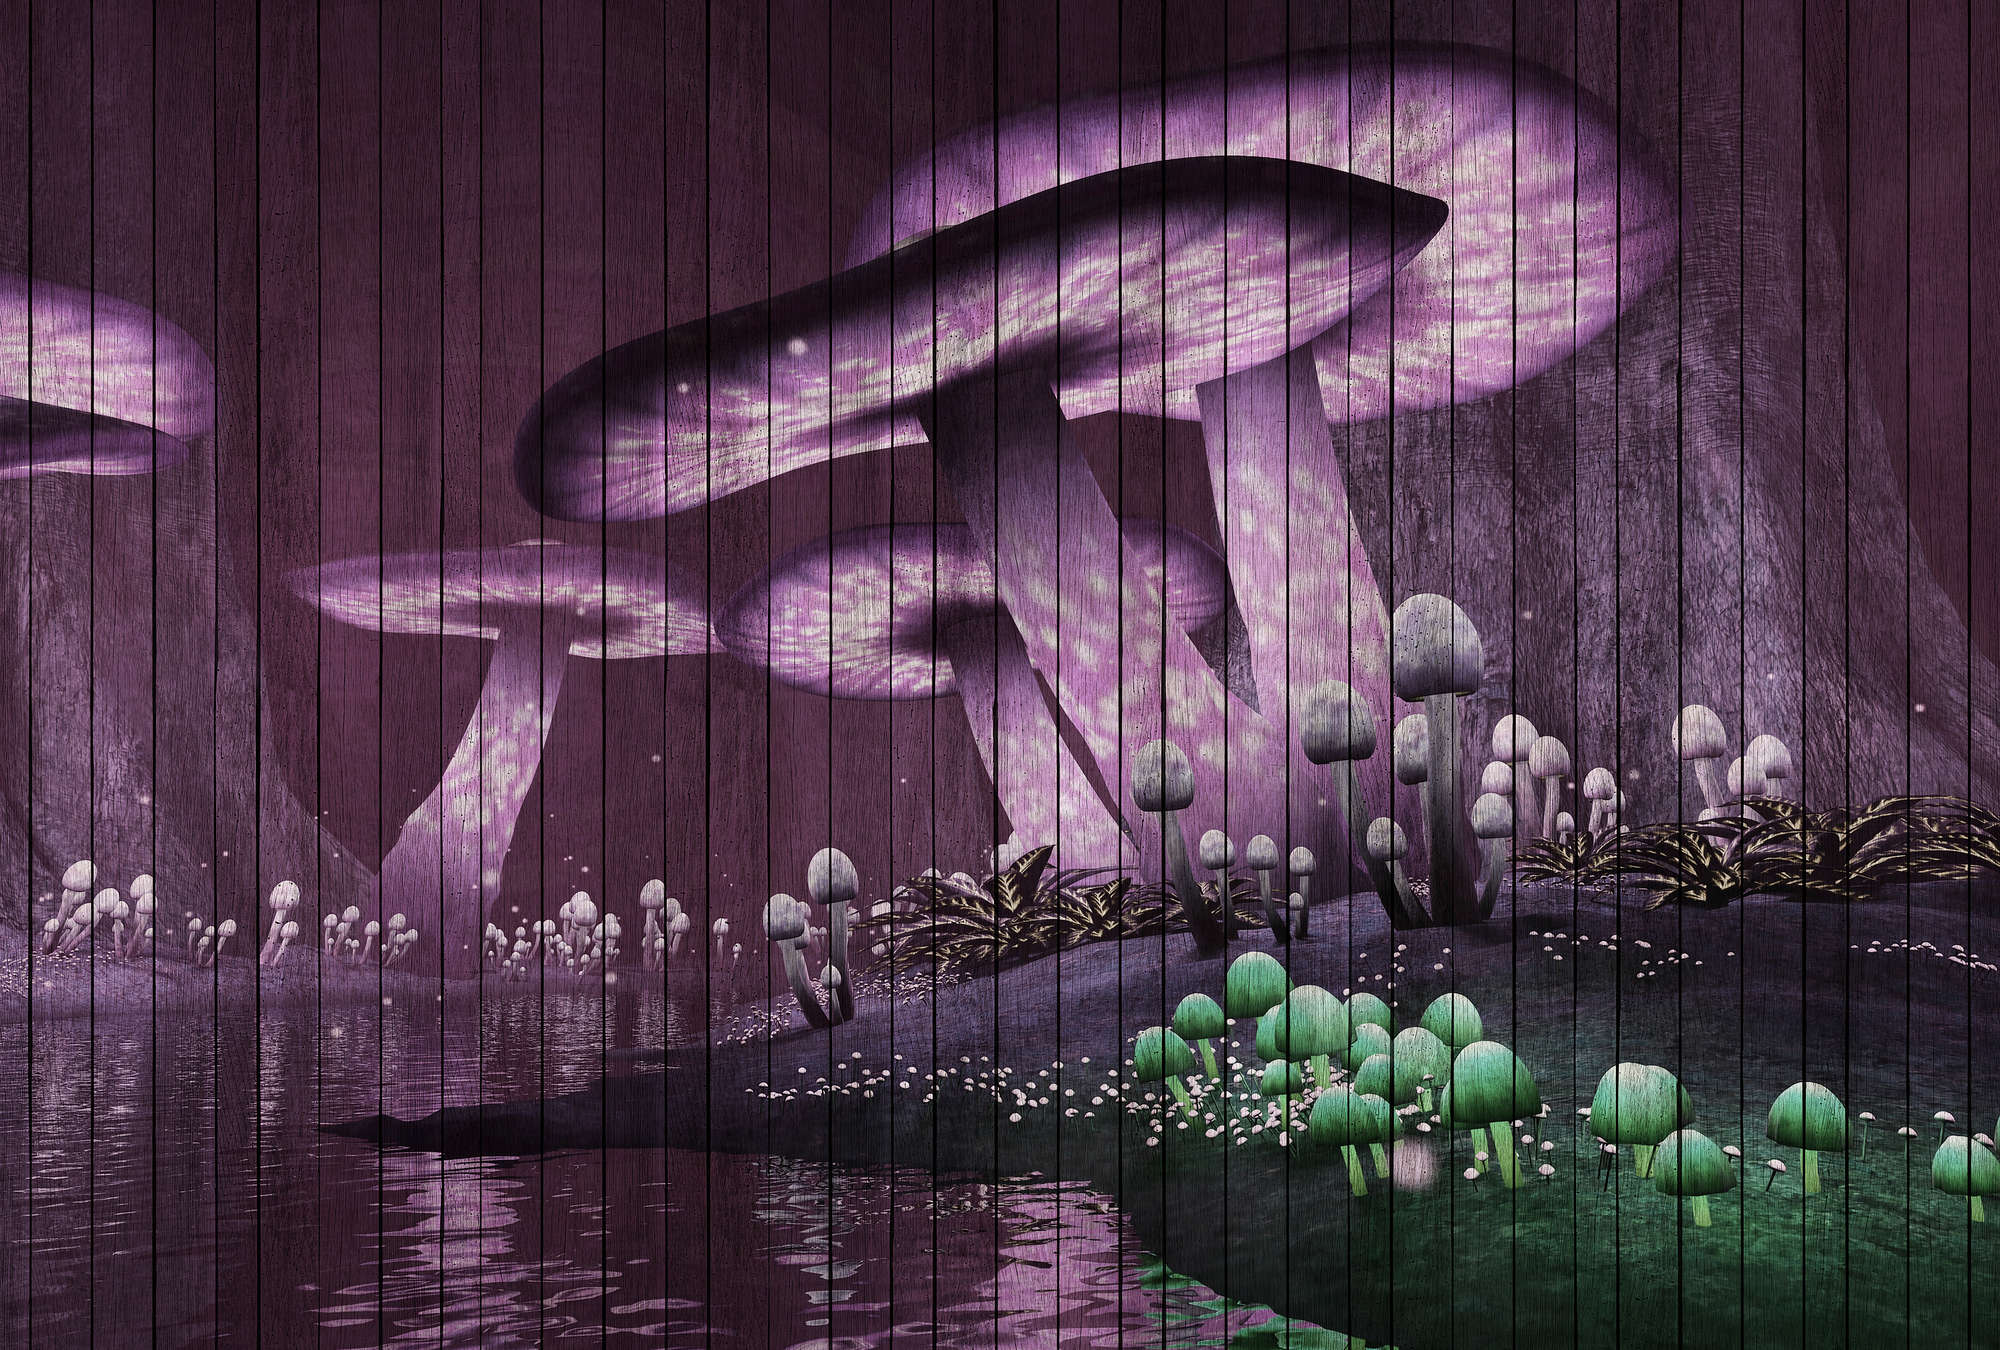             Fantasy 2 - Fototapete magischer Wald mit Holzpaneele Struktur – Grün, Violett | Struktur Vlies
        